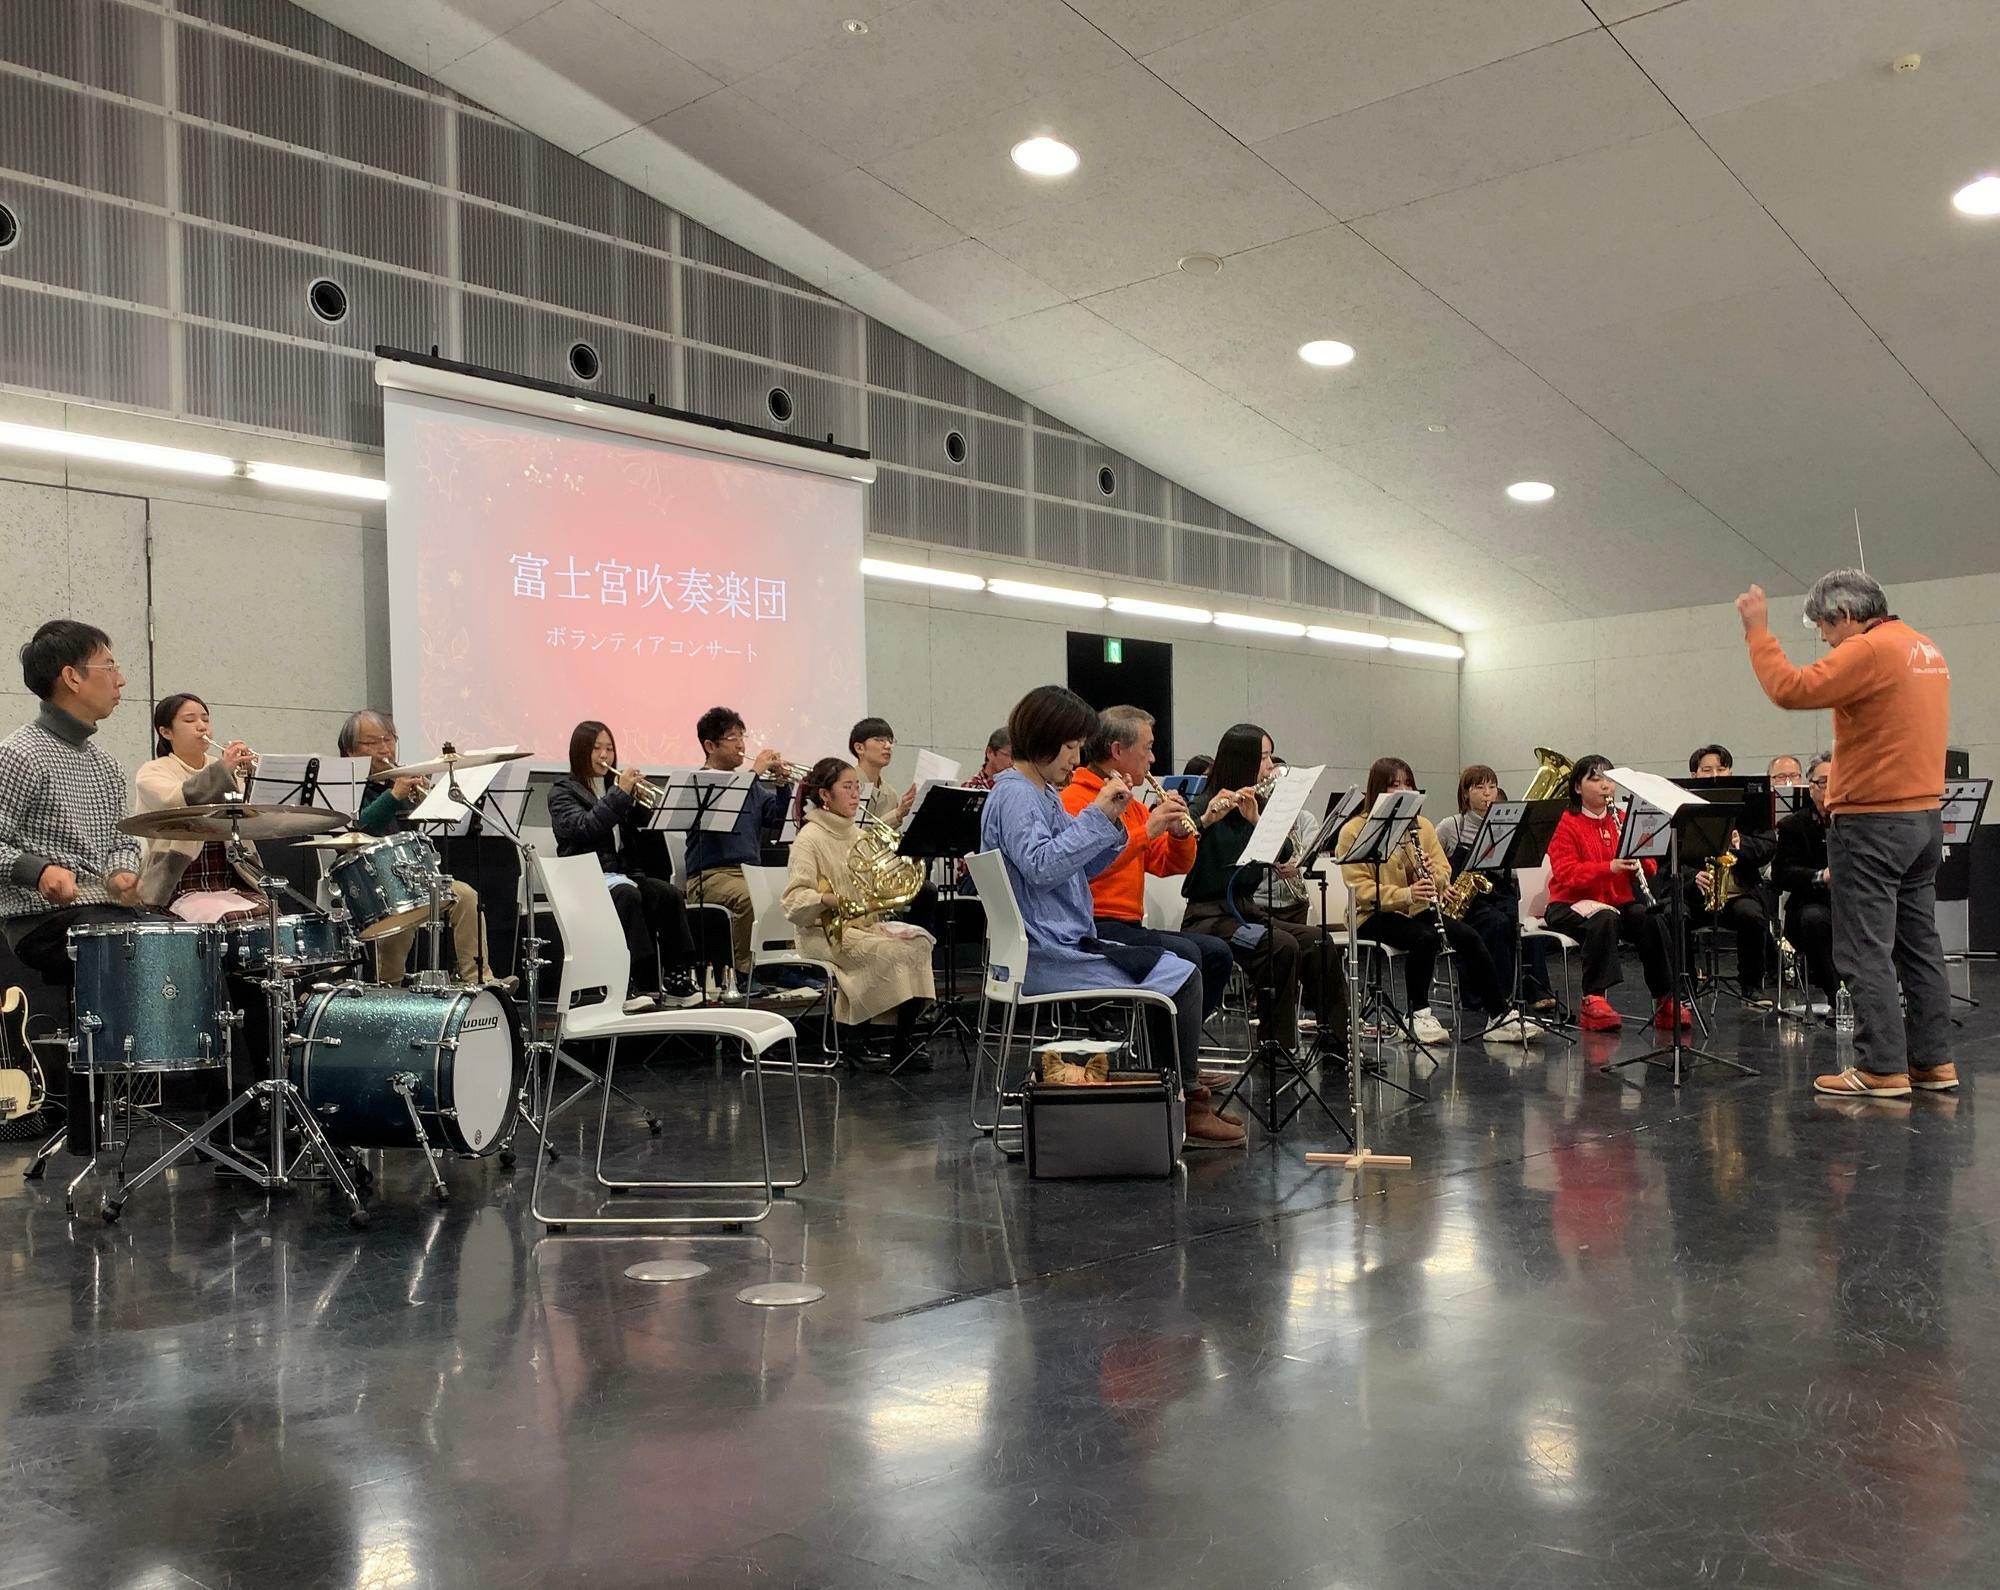 富士宮吹奏楽団によるボランティアコンサート